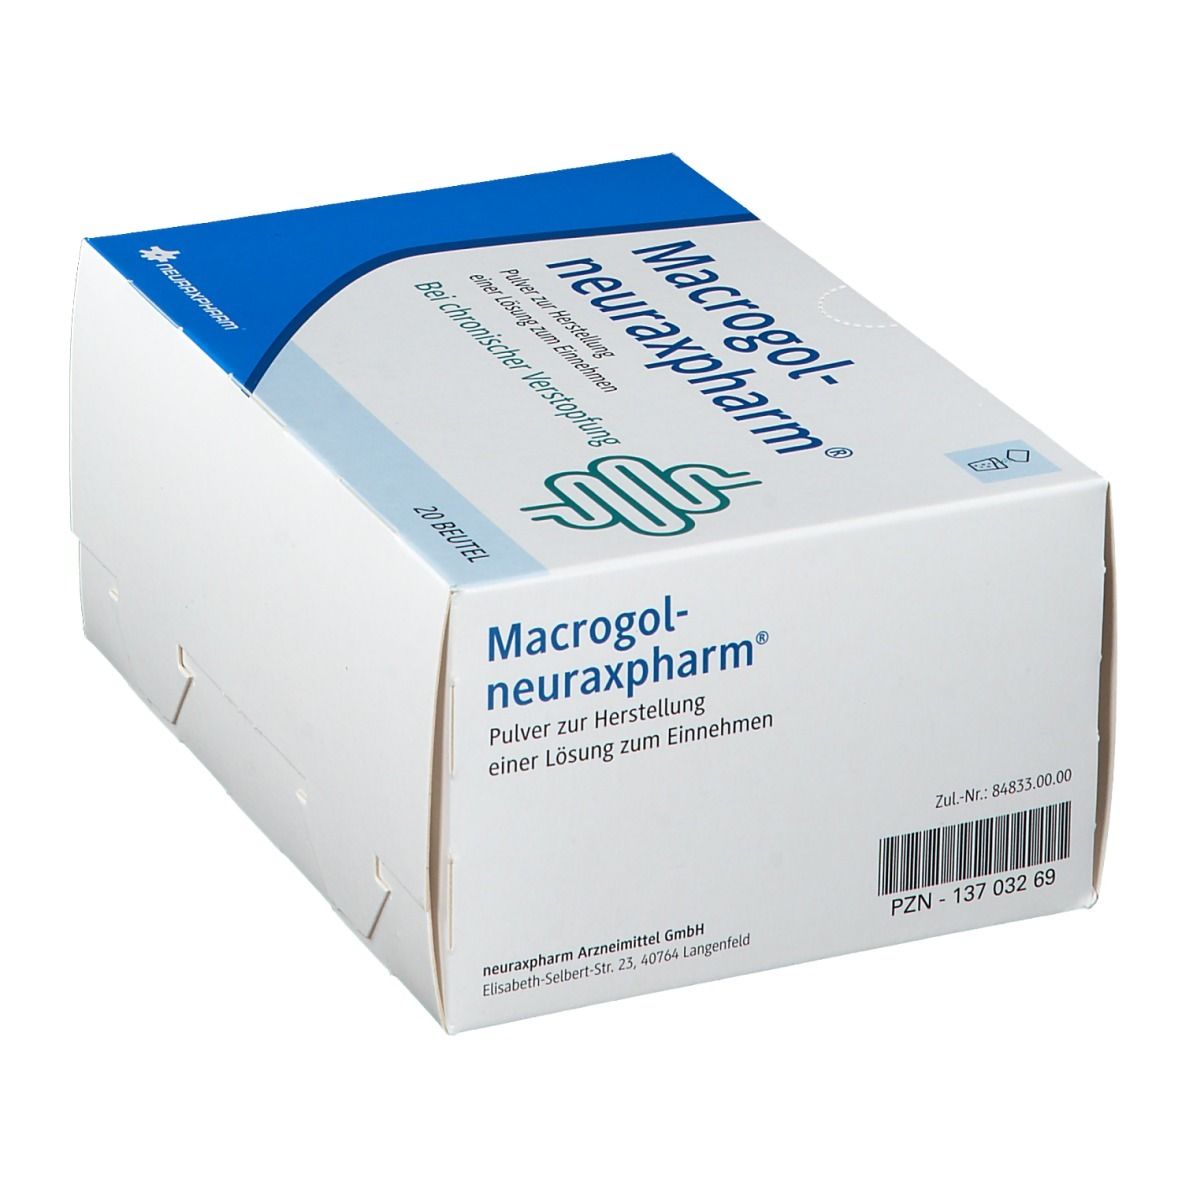 Macrogol neurexapharm